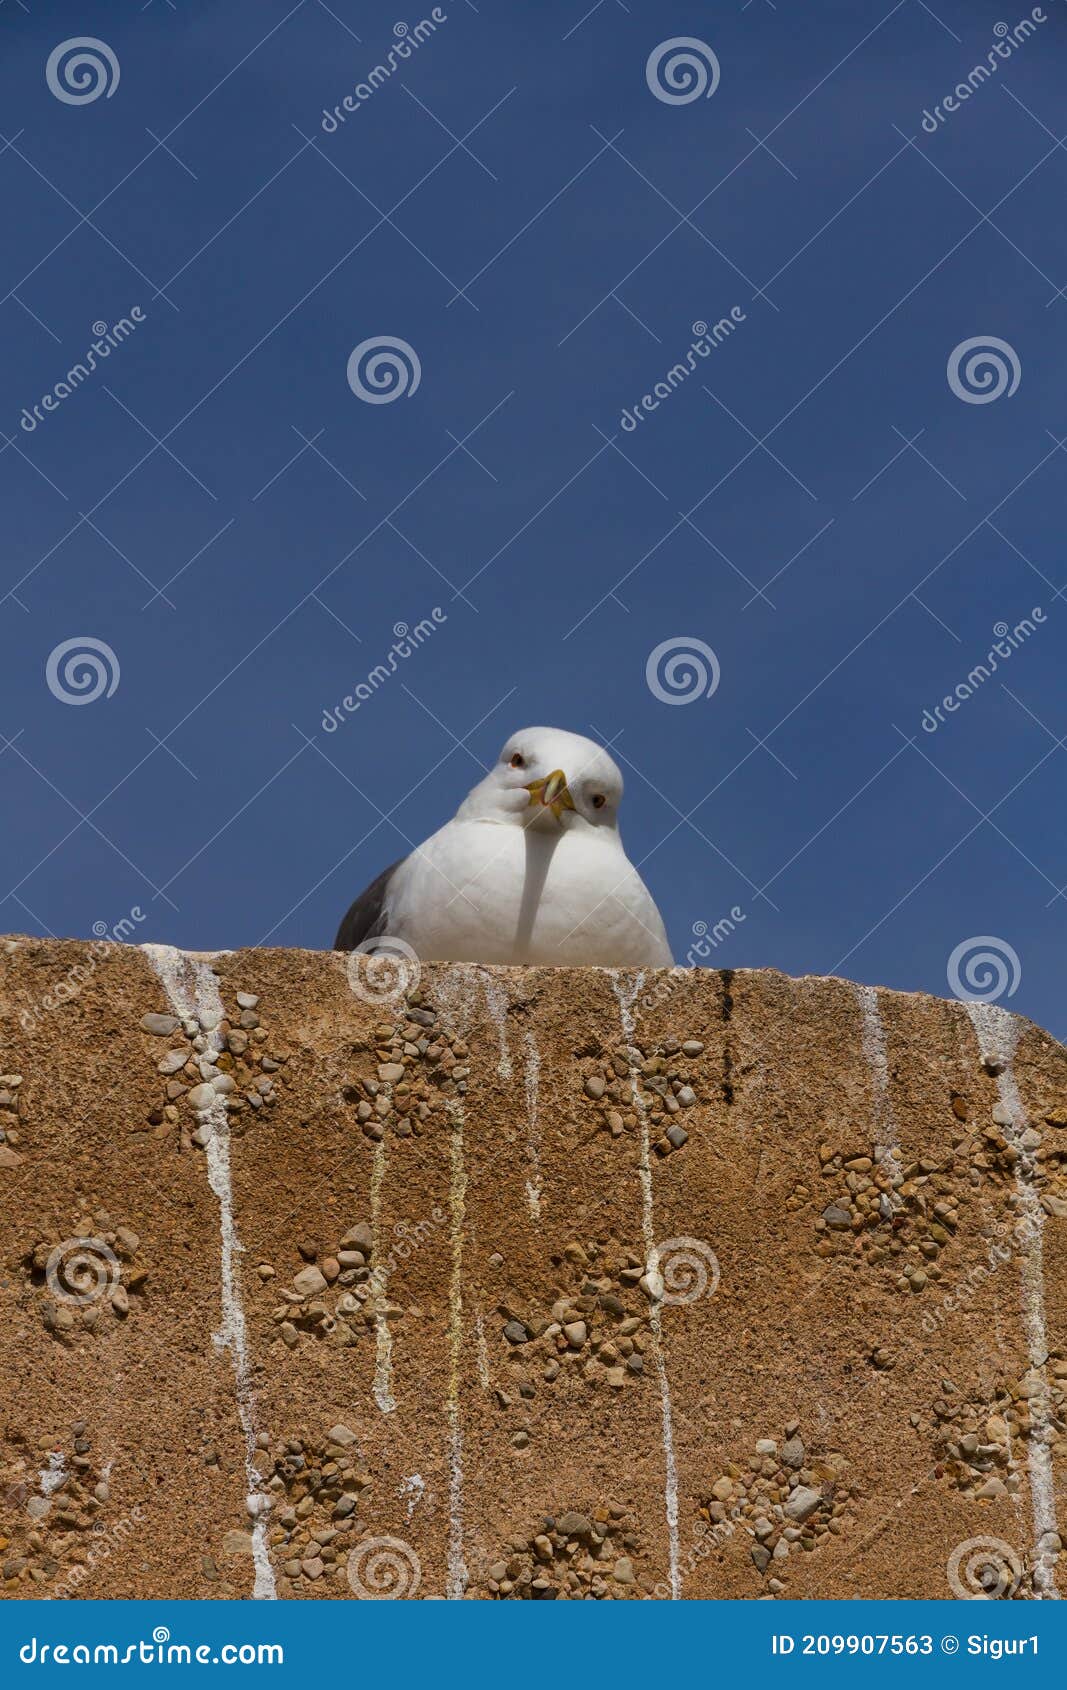 seagull looking at camera